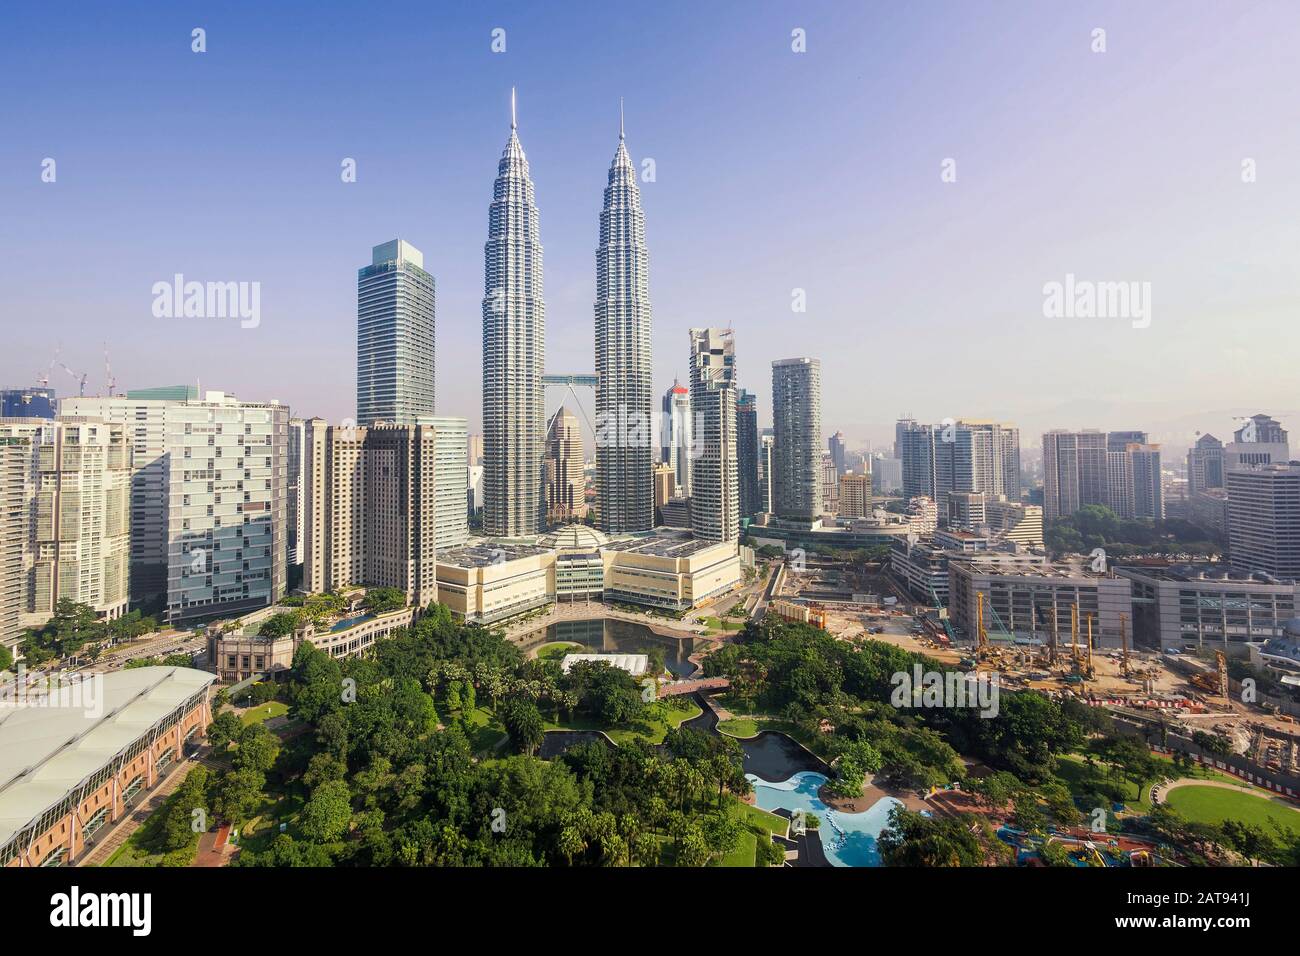 Vue sur les tours Petronas et les gratte-ciel de Kuala Lumpur pendant la journée à Kuala Lumpur, en Malaisie. Banque D'Images